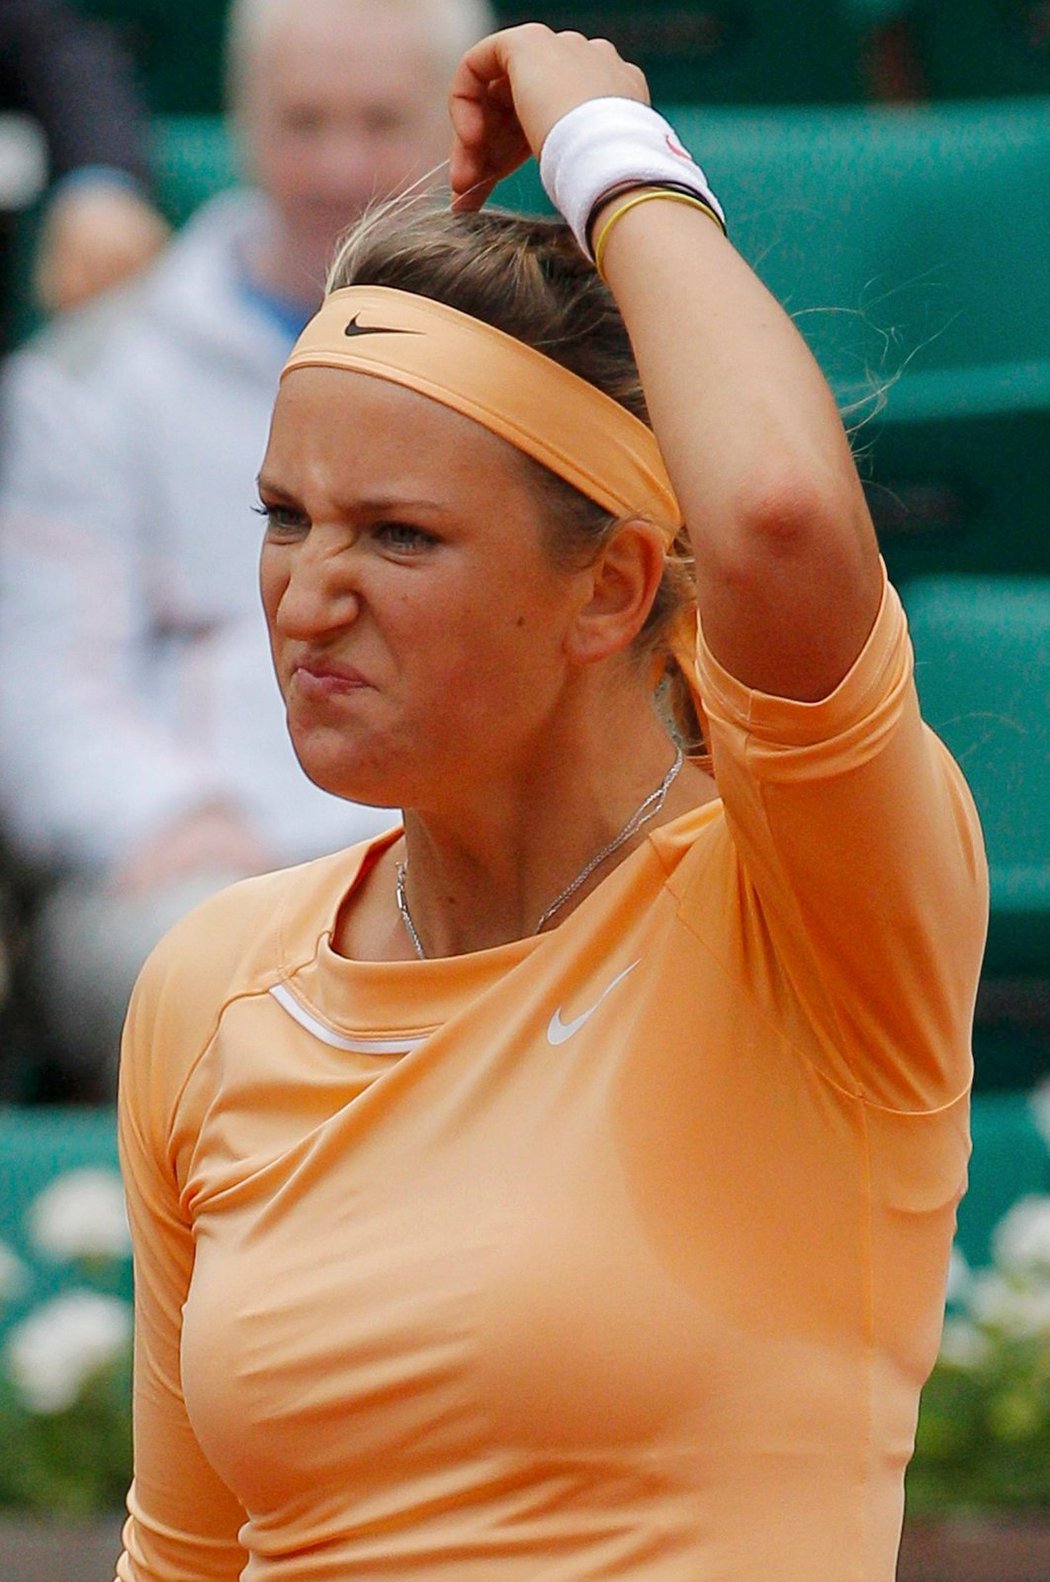 Světovou jedničku Azarenkovou vyřadila v osmifinále French Open slovenská tenistka Cibulková.